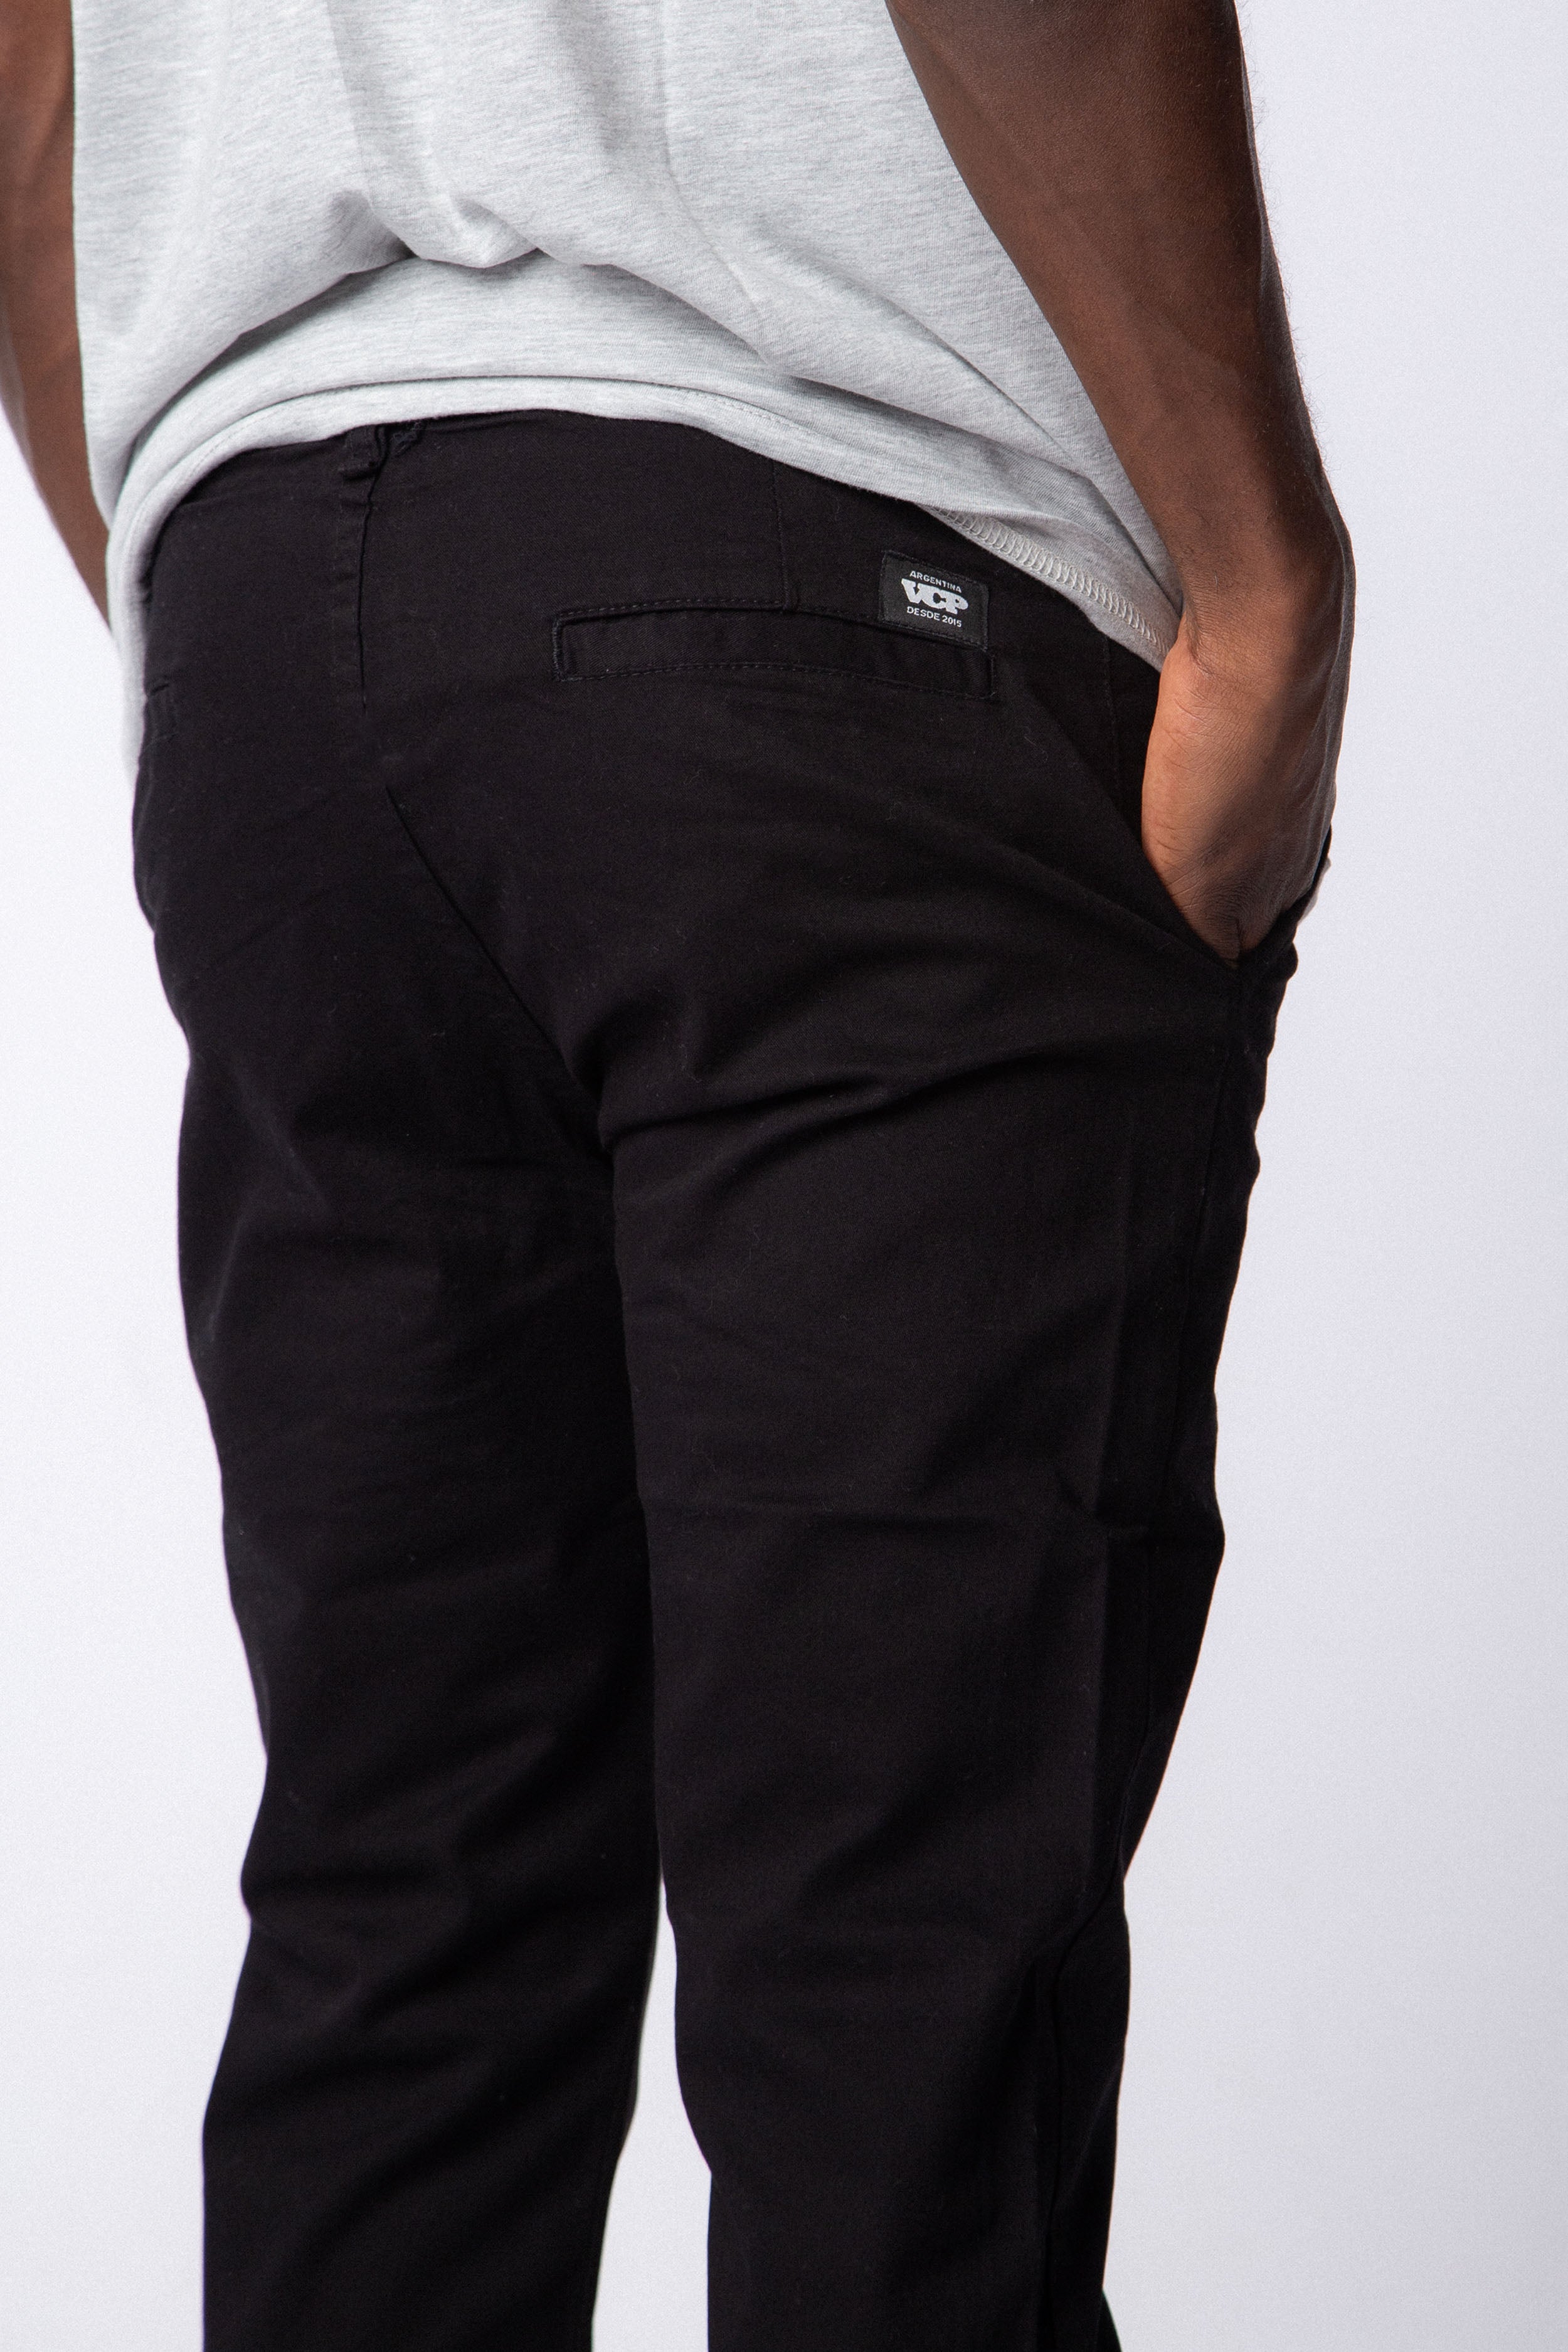 Pantalon Chino Rodman Negro